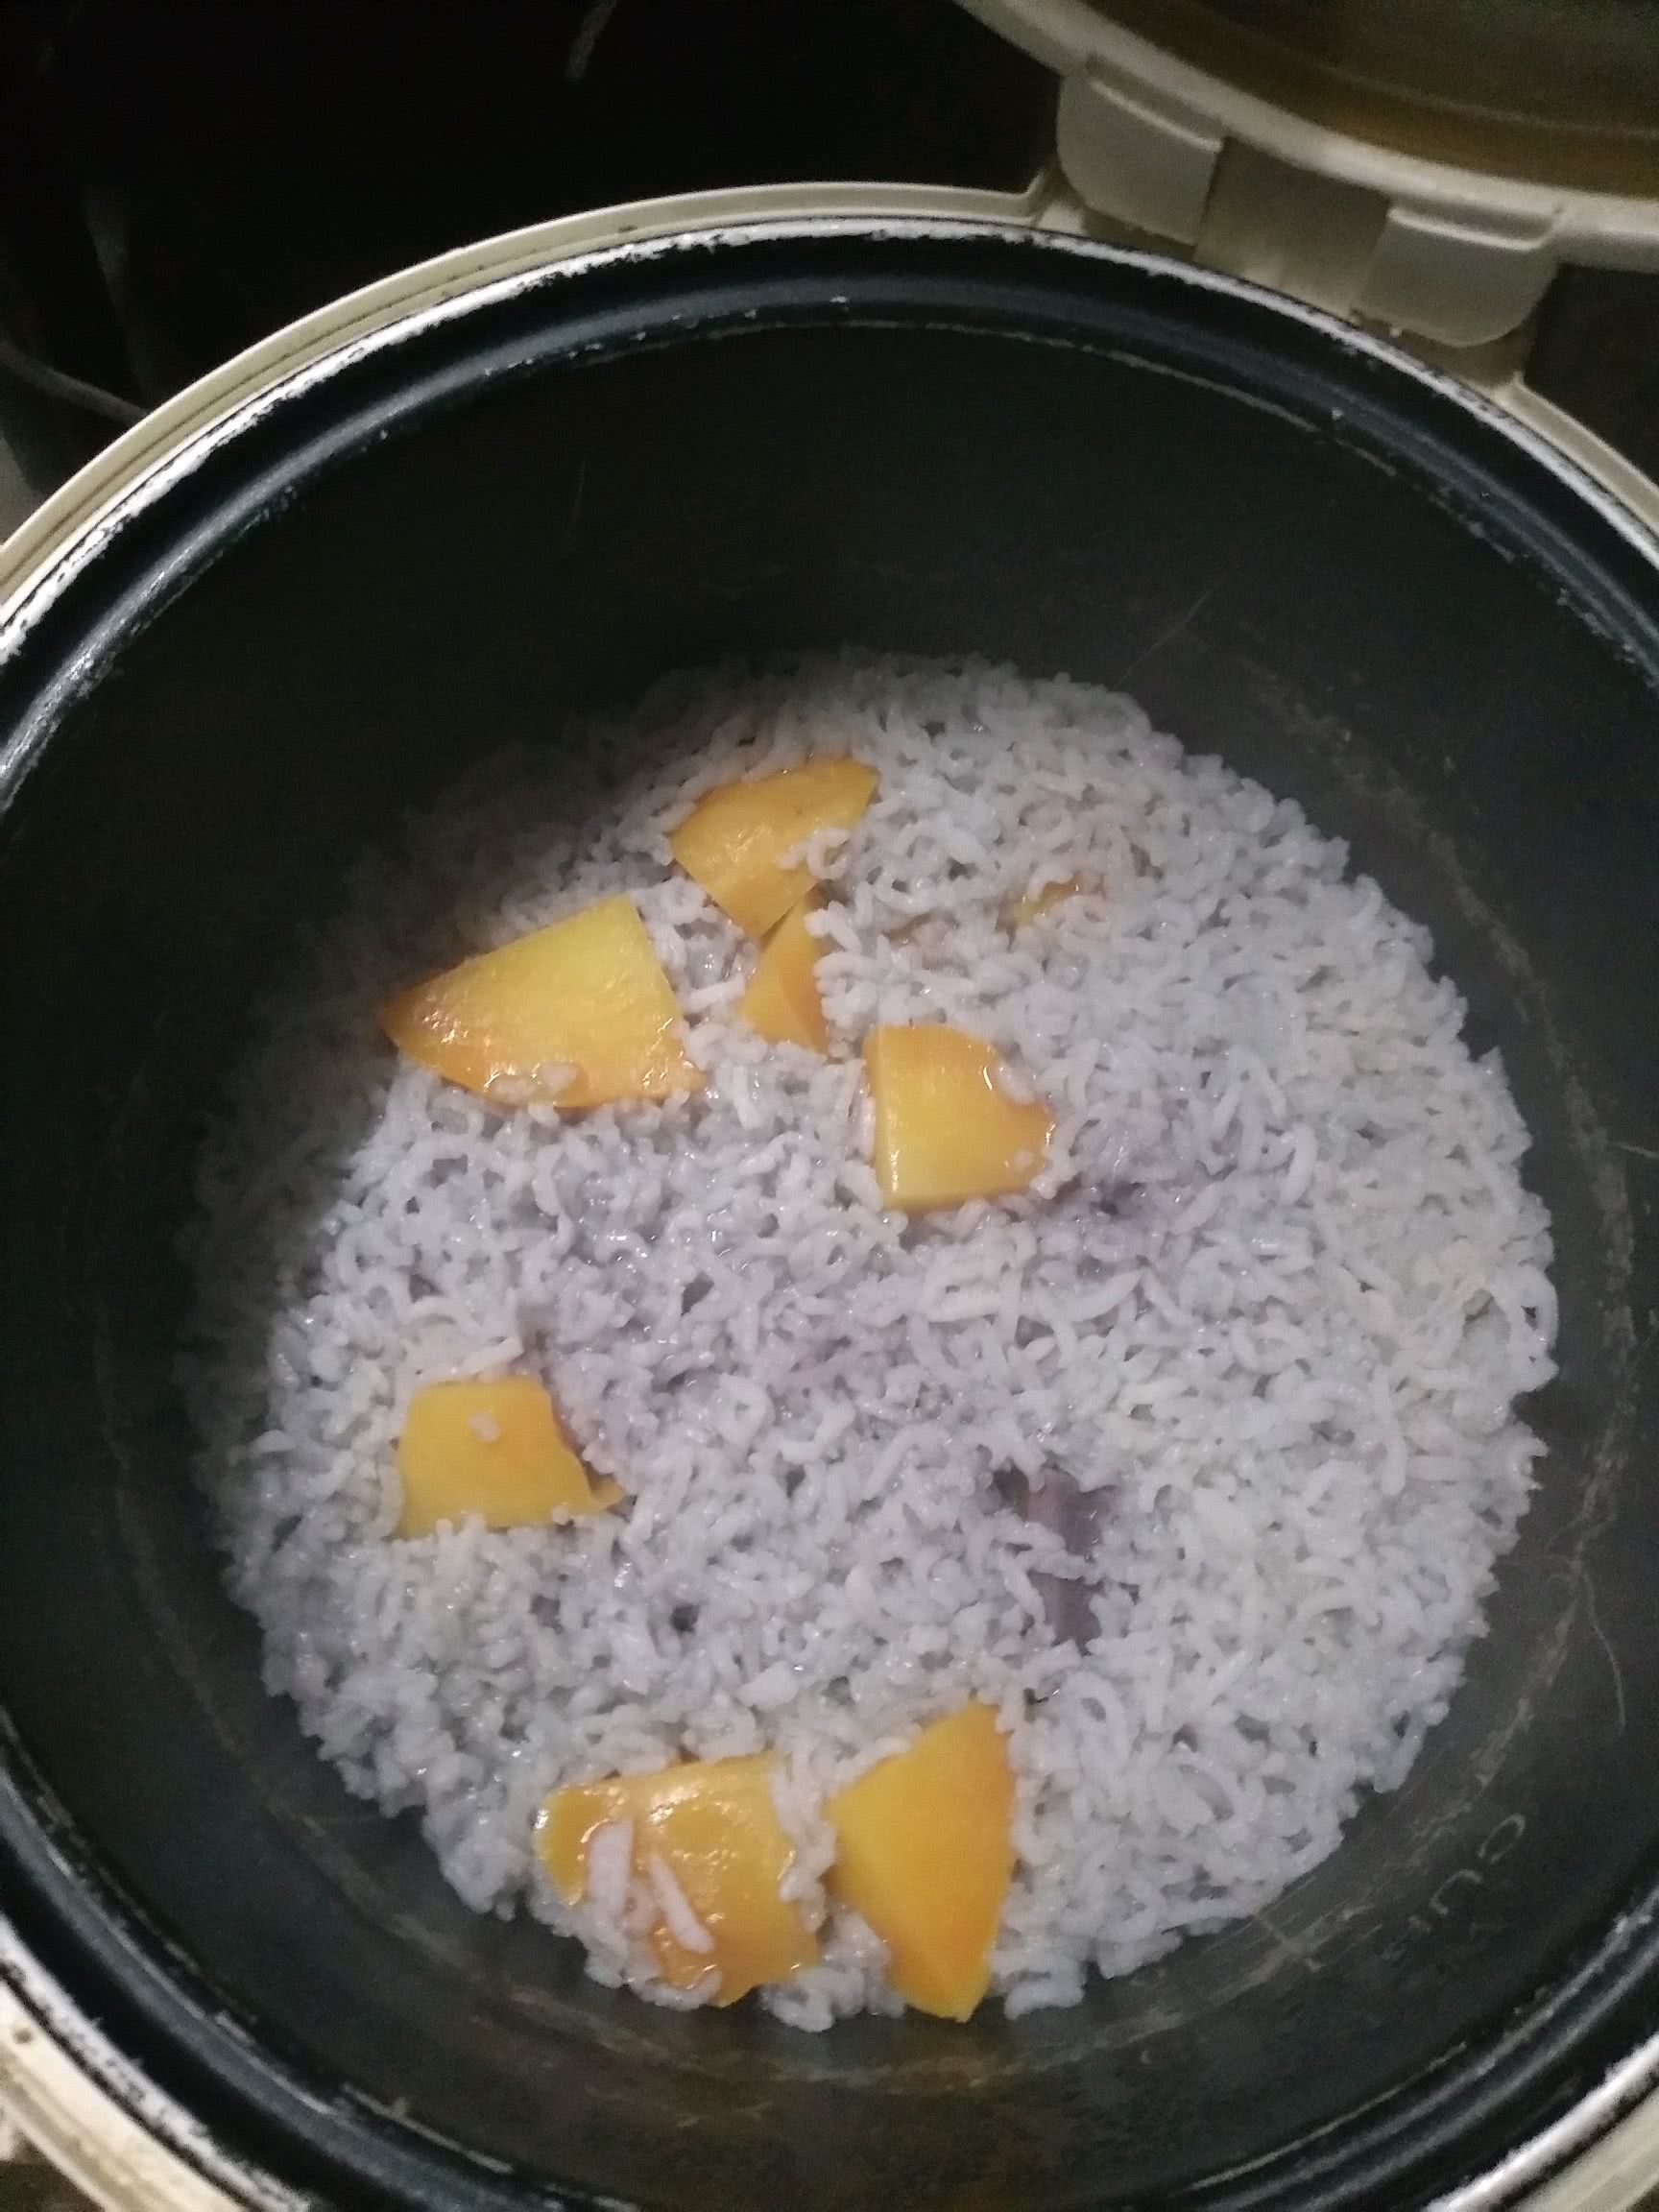 等电饭锅煮饭煮好,紫薯饭熟了,紫薯也熟了,一举两得哦!